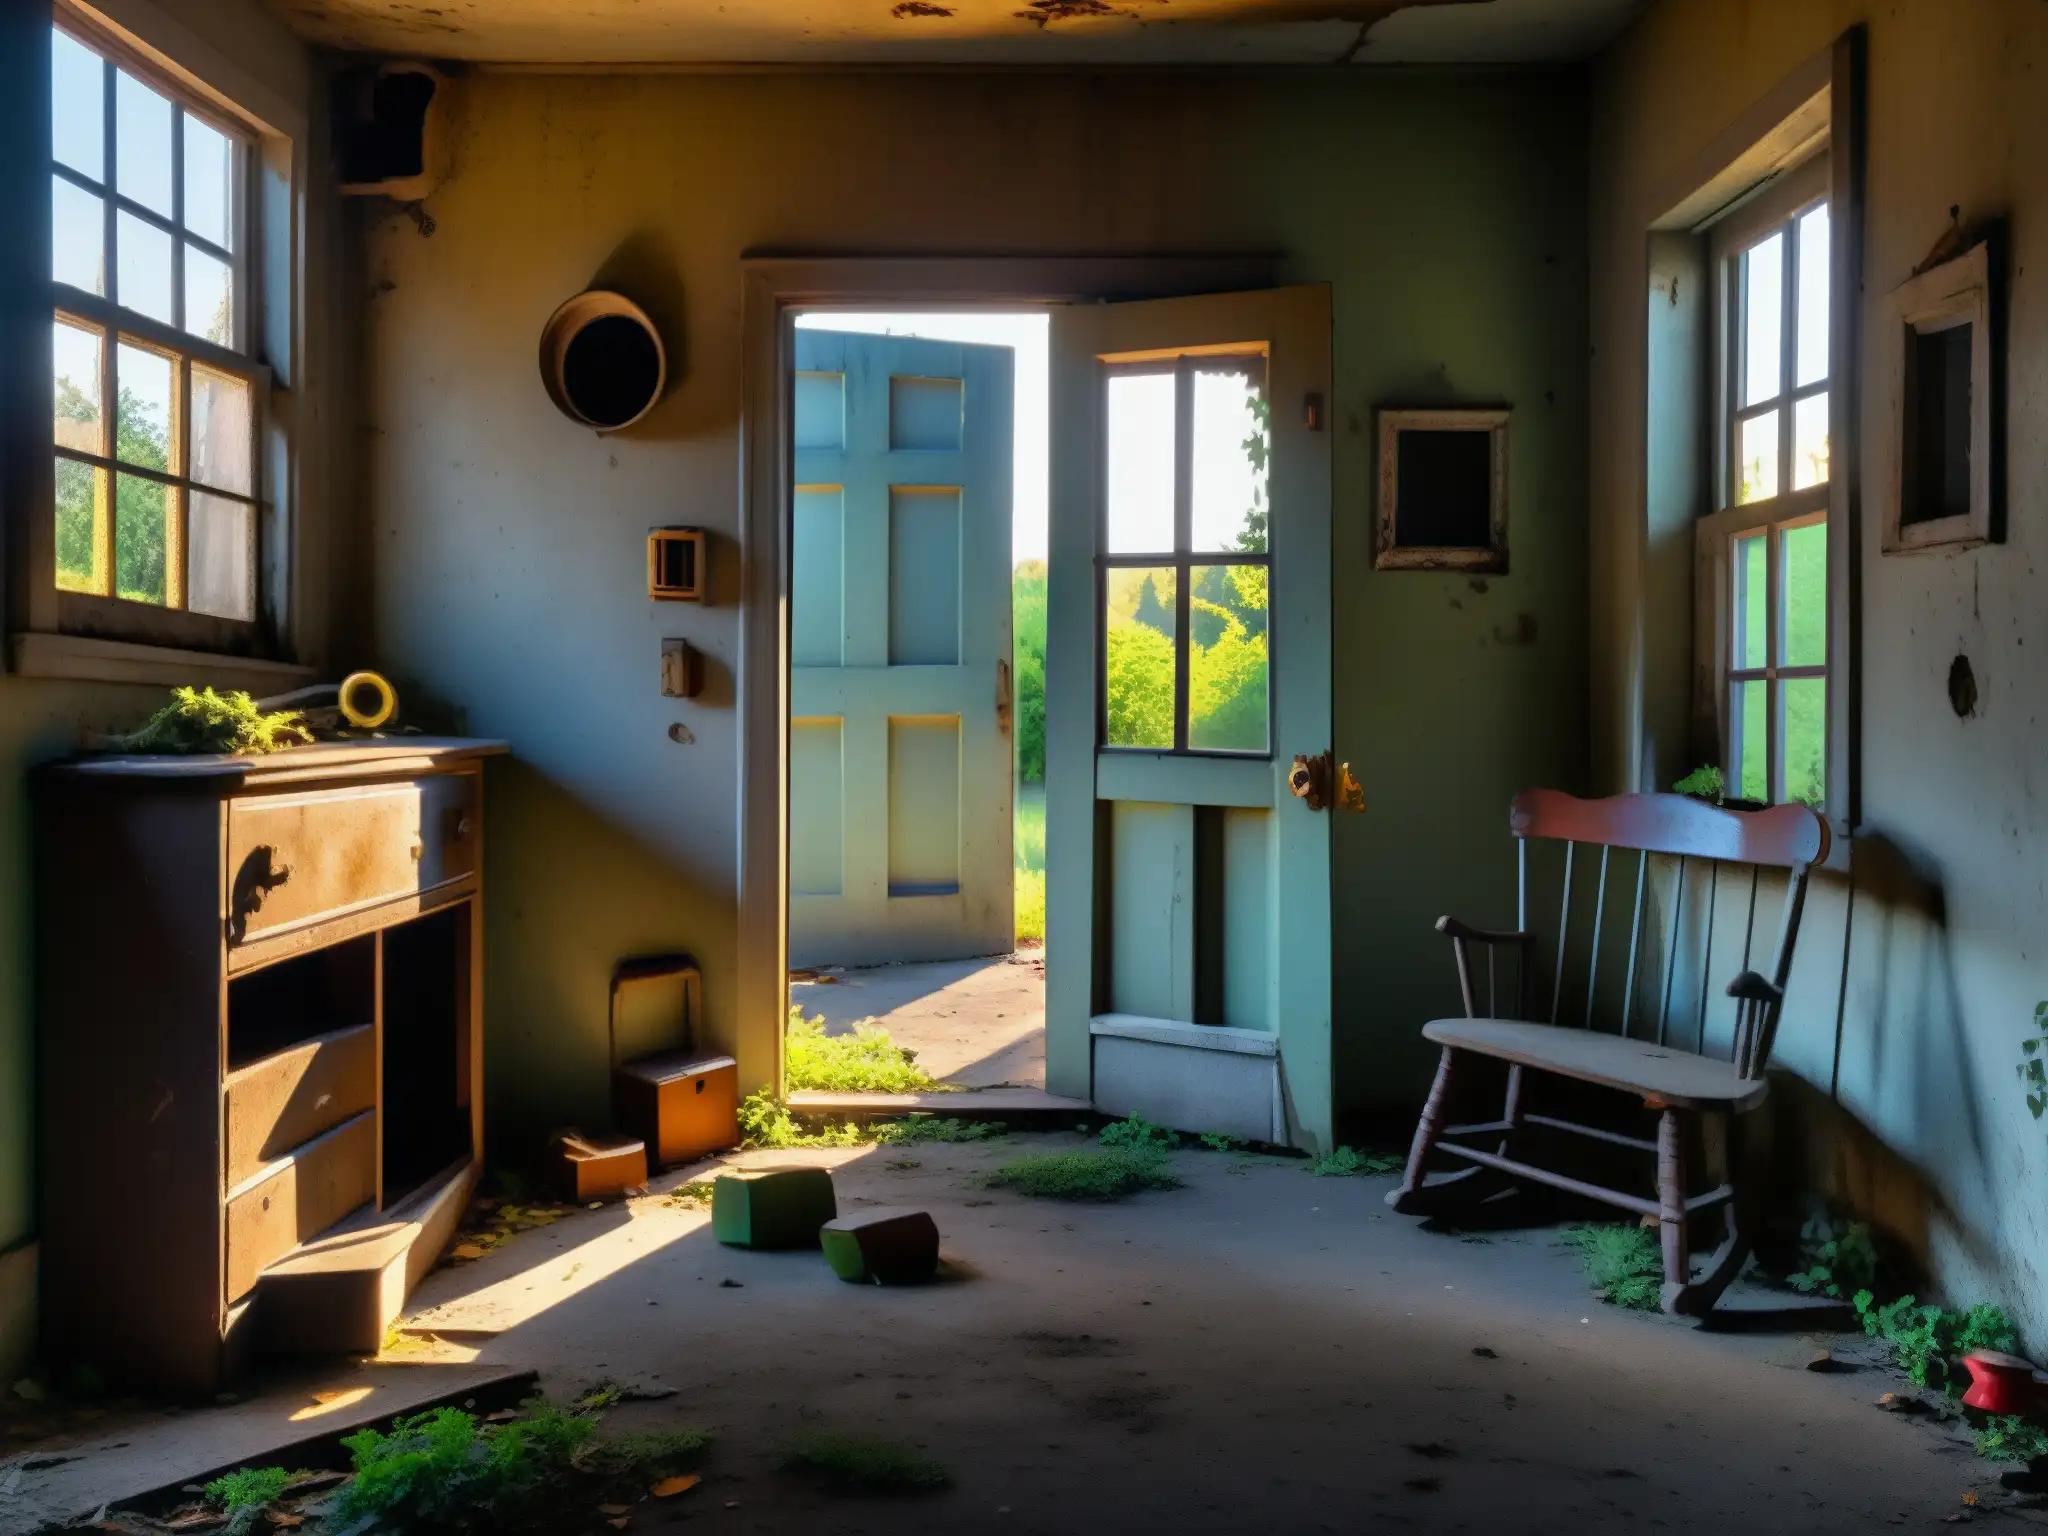 Un hogar abandonado y desolado, con juguetes oxidados y mobiliario desgastado